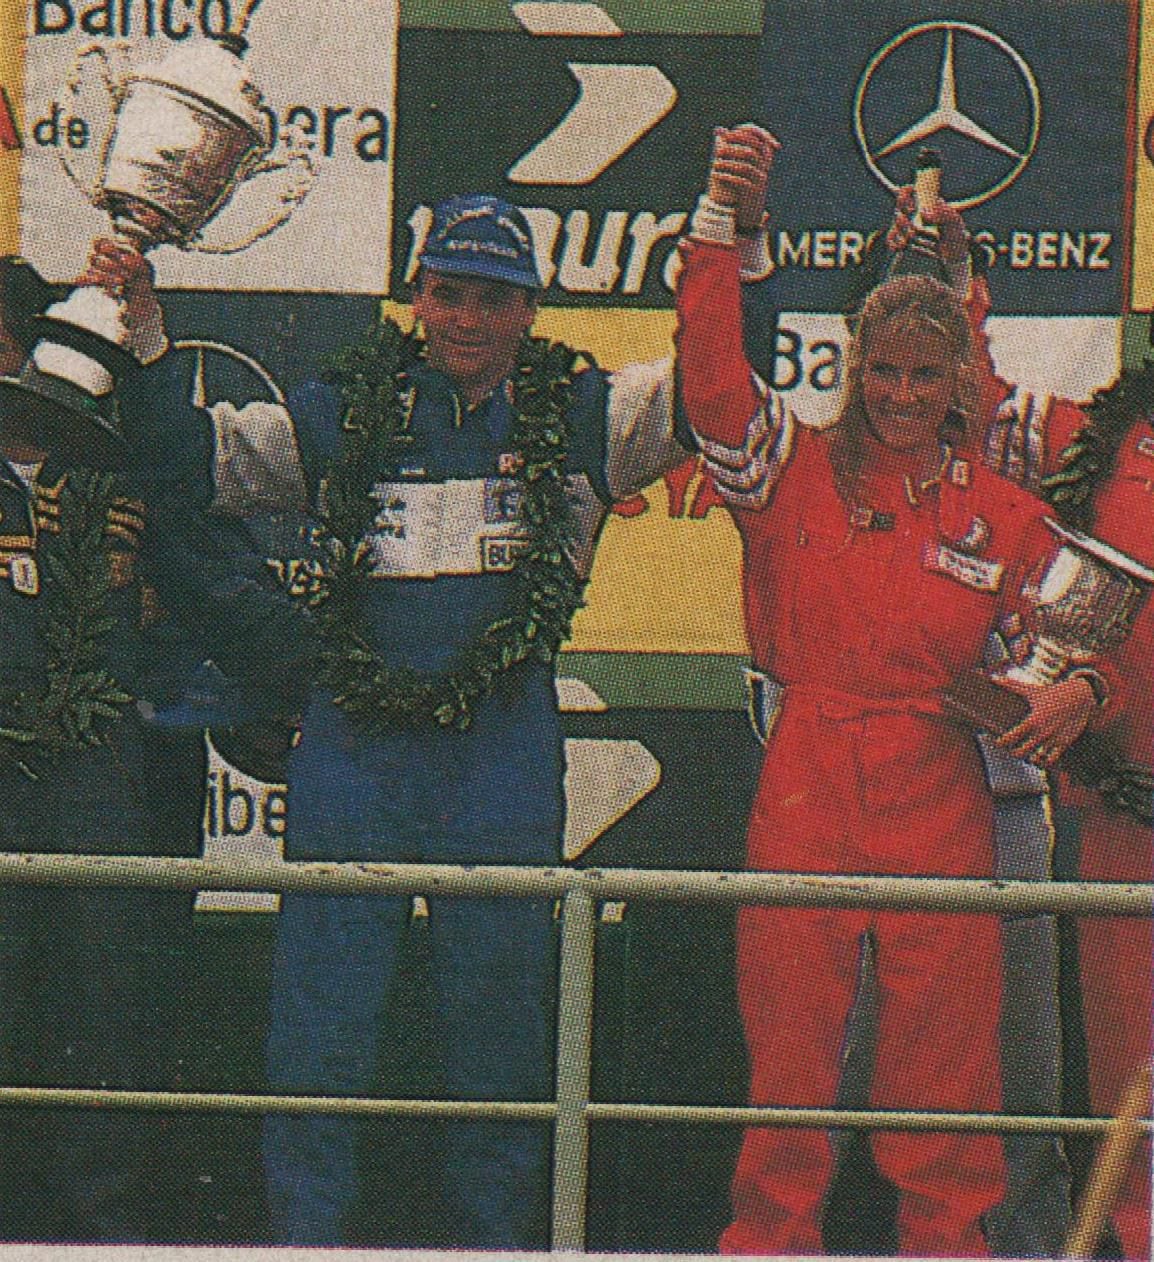 En el podio de Buenos Aires 1993 junto a Virginia Elizalde (archivo CORSA)